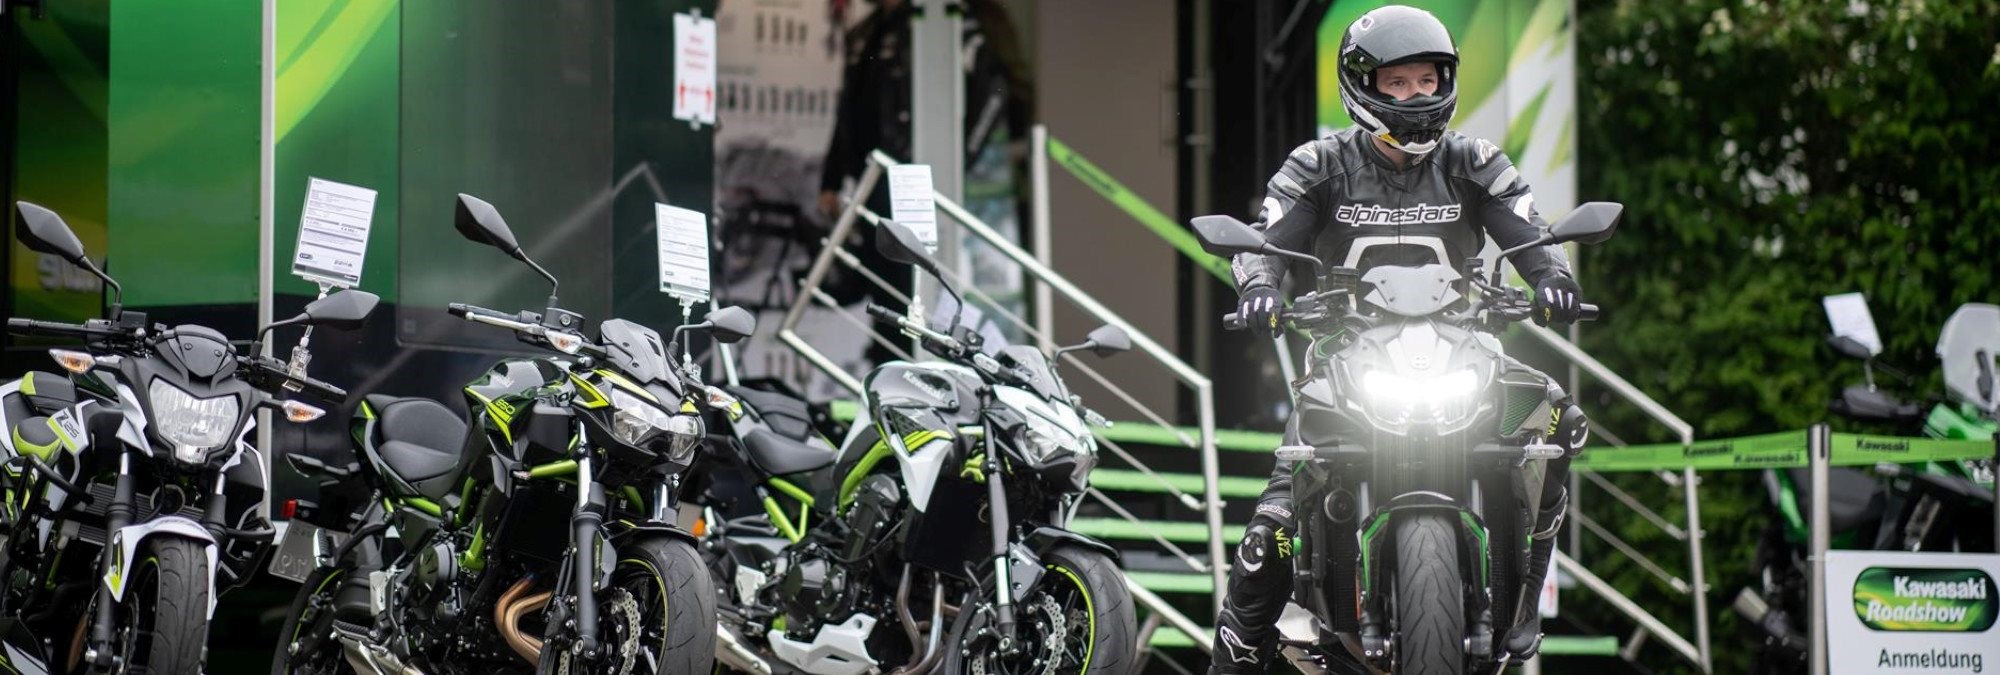 Die Kawasaki-Roadshow geht auch 2022 wieder auf Tour!